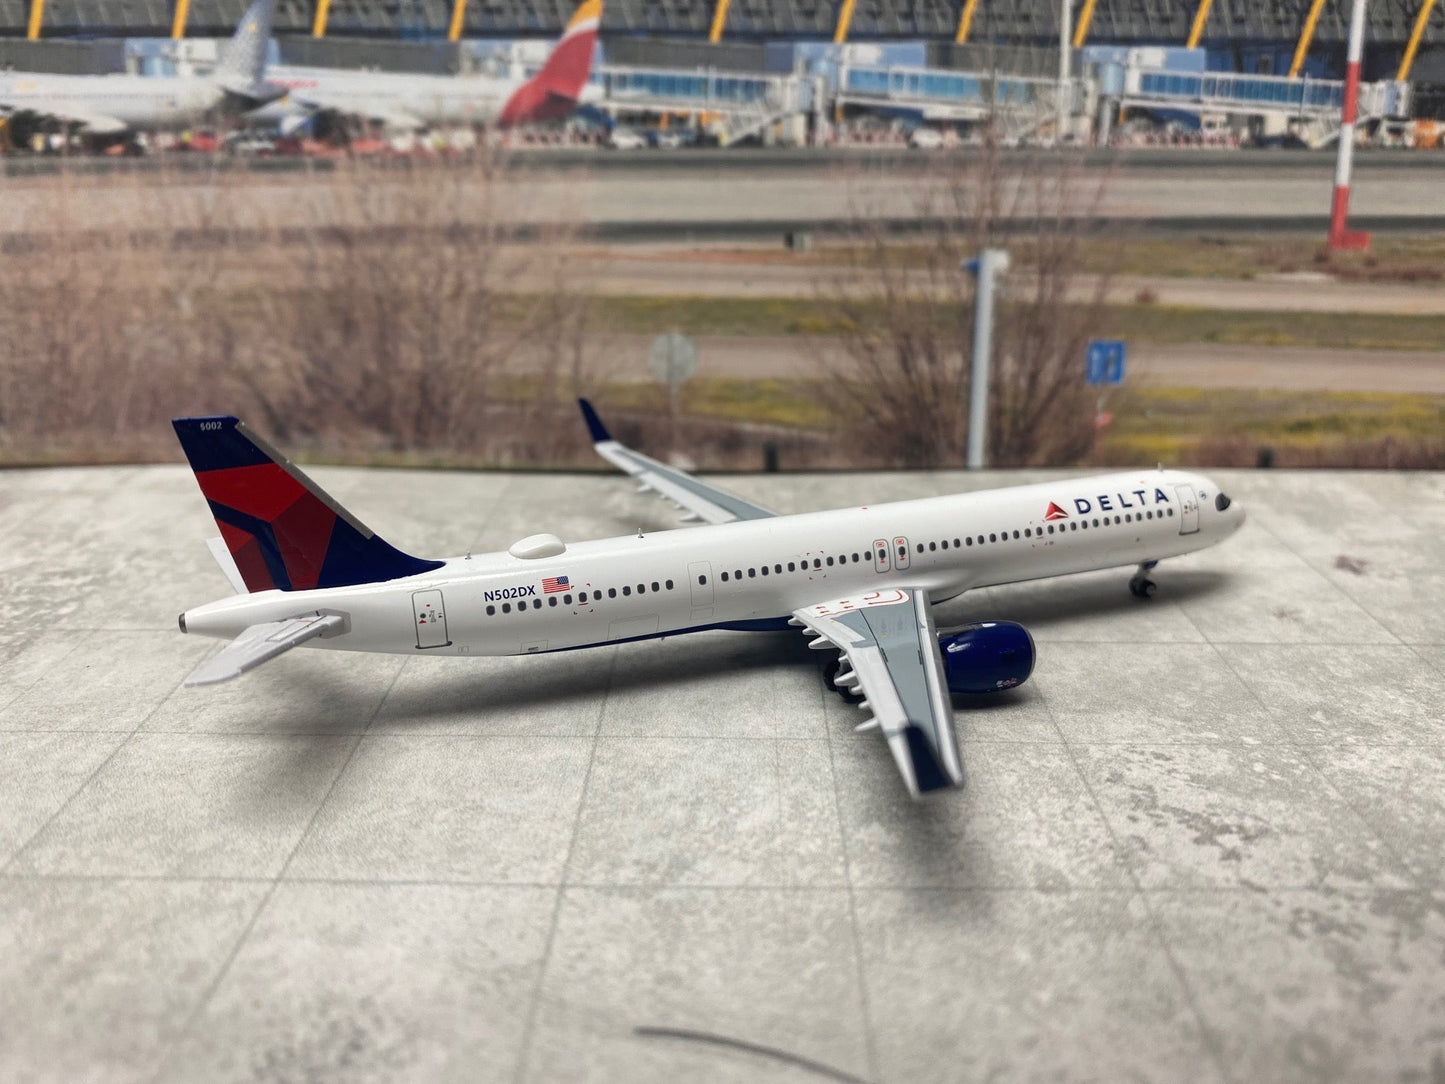 *1/400 Delta Airlines A321neo Panda Models 202210